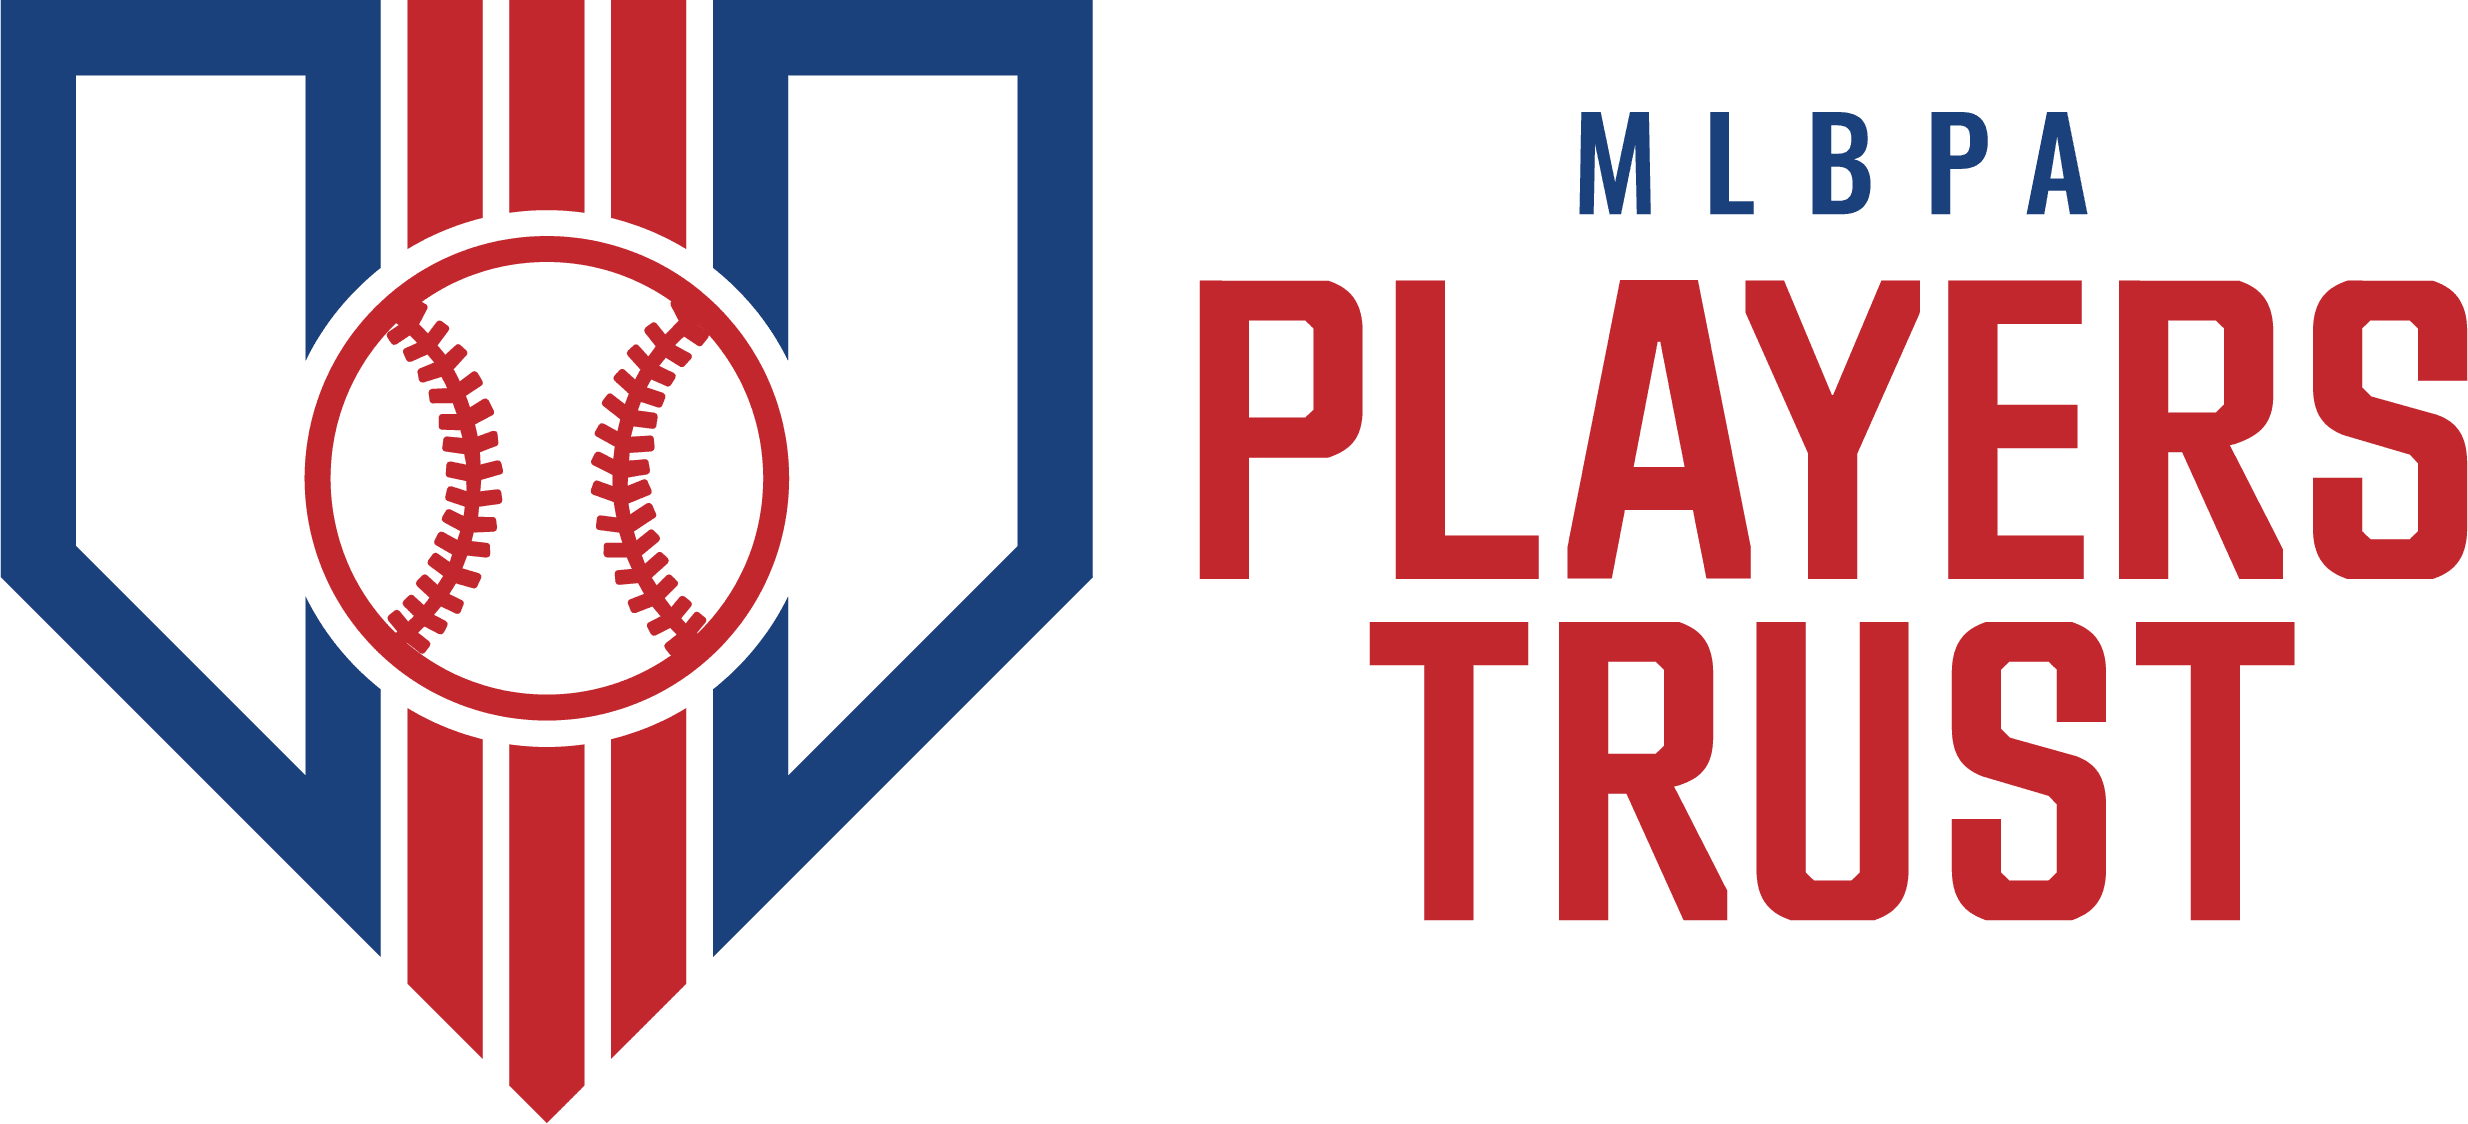 MLB Confianza de los jugadores Logo